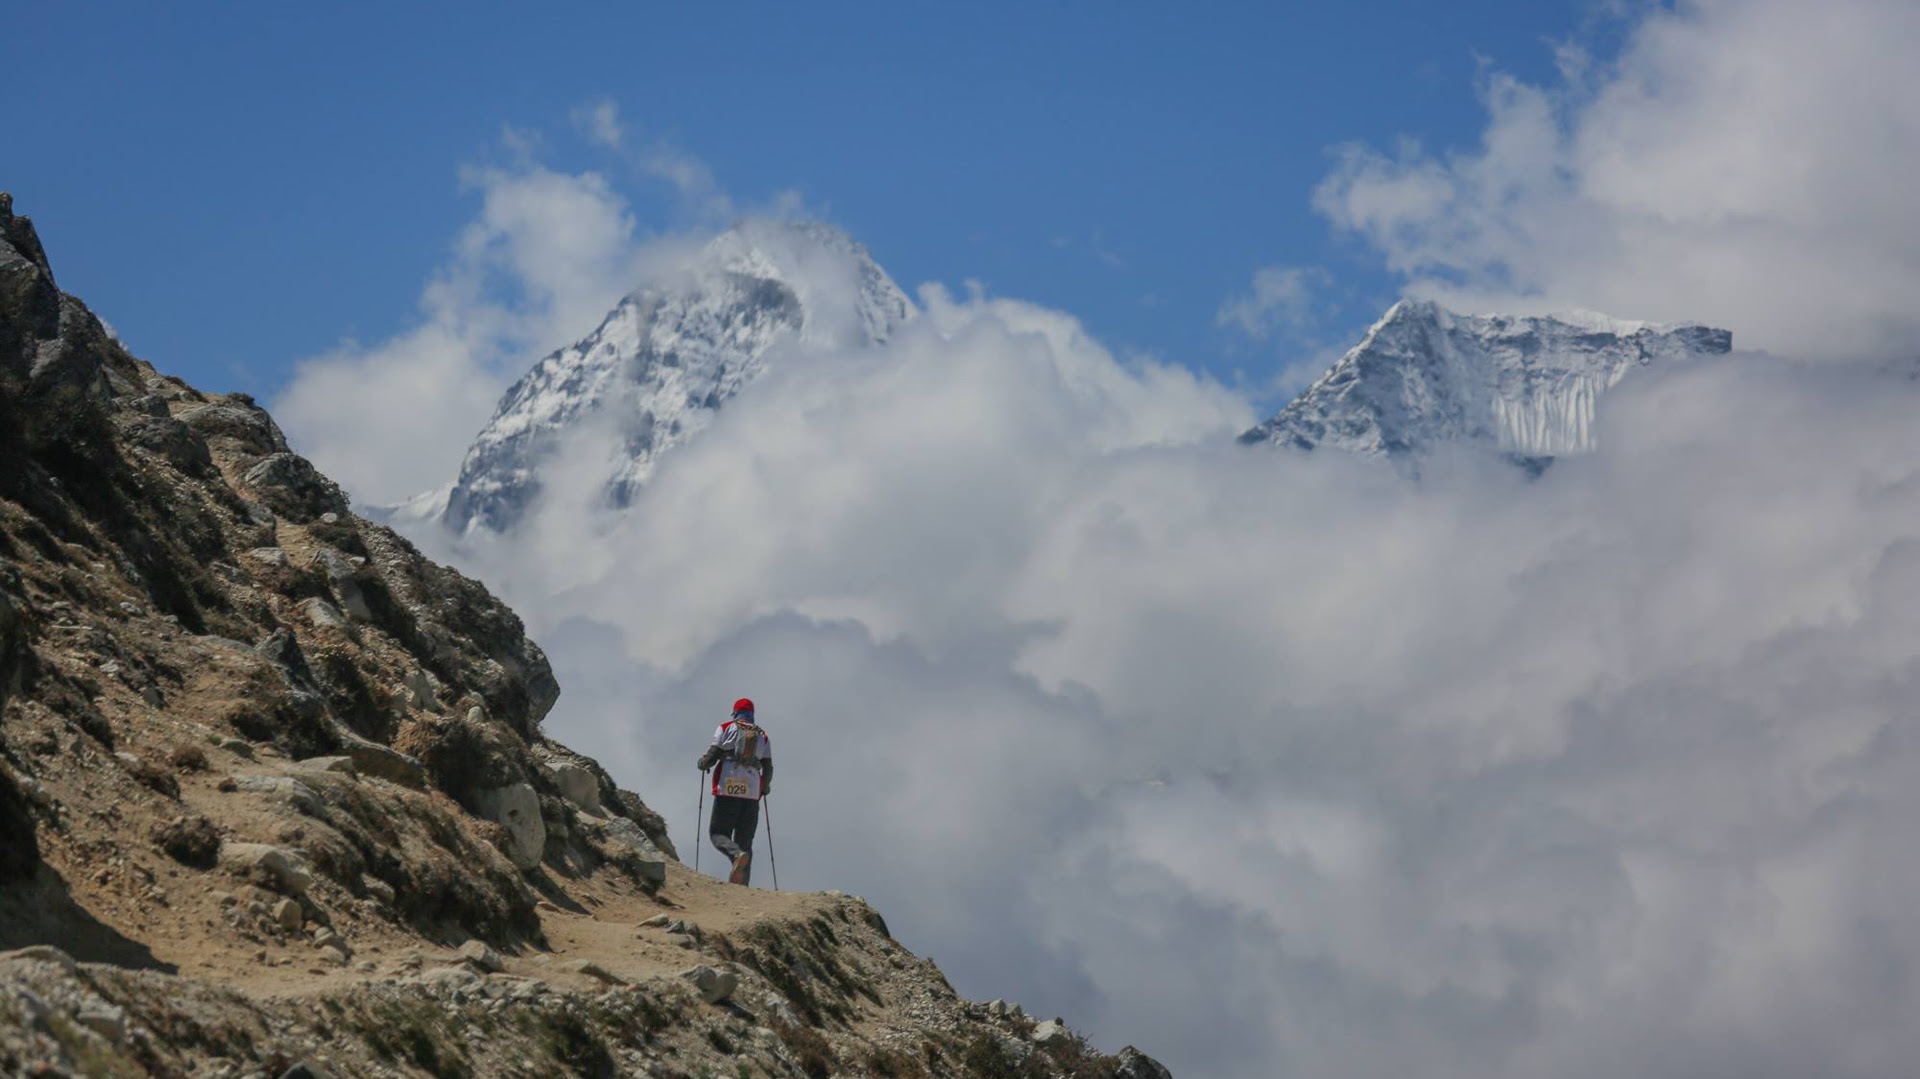 Son muchos los que deciden emprender la aventura del Everest, aunque pocos son los que llegan en condiciones, ya que no toman los recaudos necesarios (Istock)